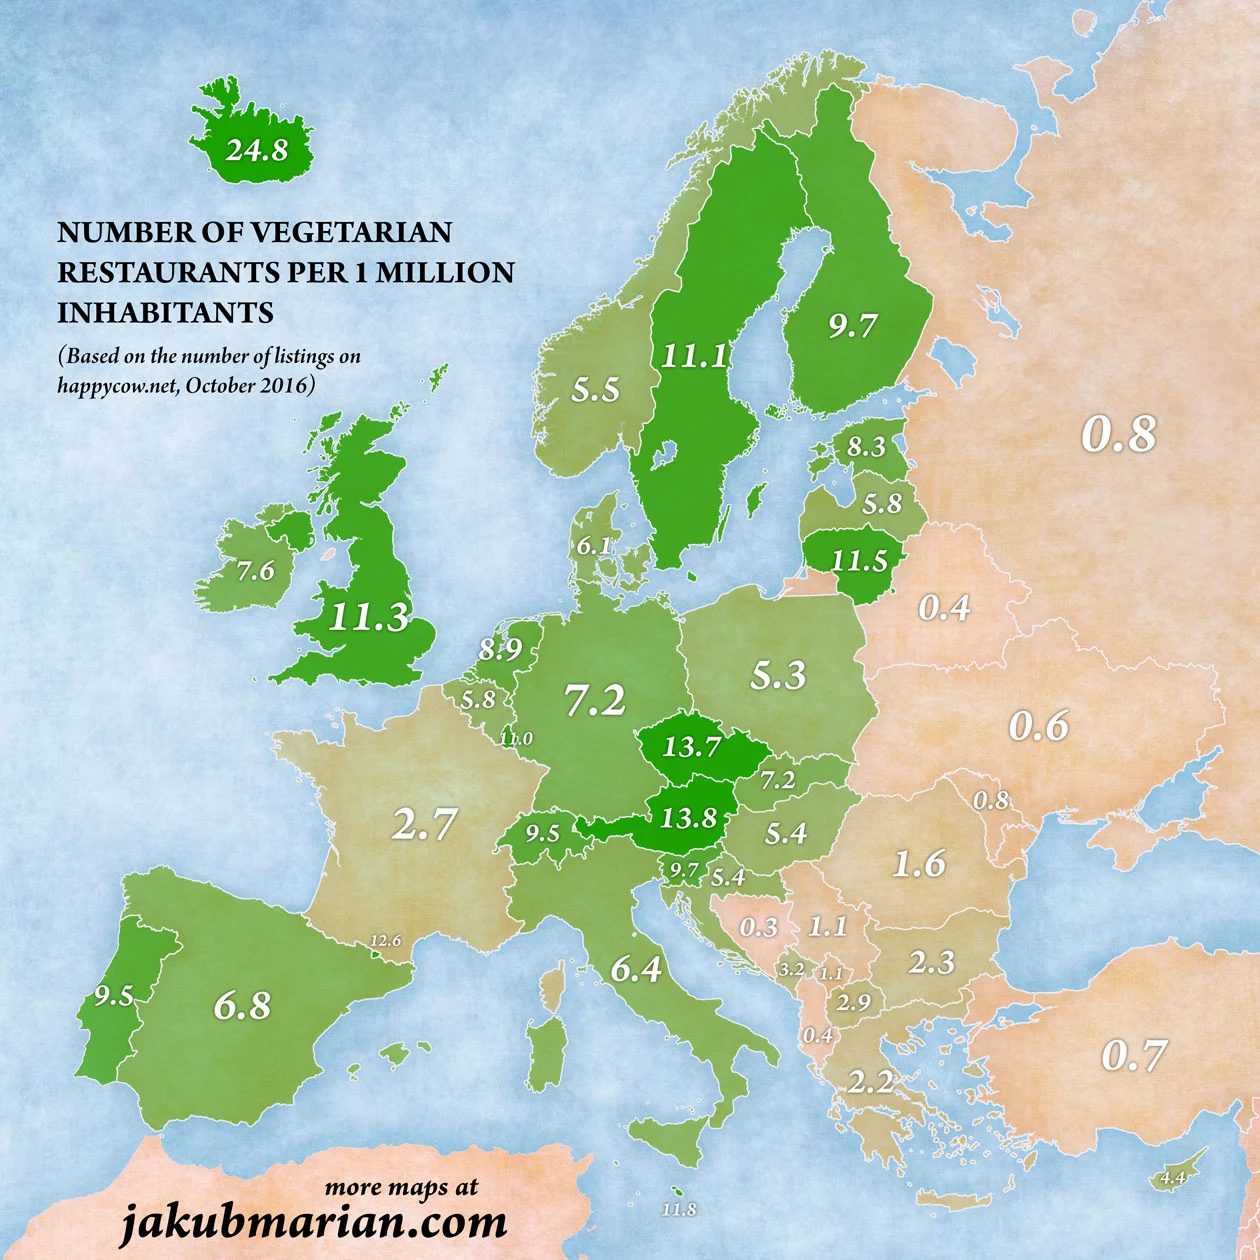 Number of vegetarian restaurants per 1,000,000 inhabitants